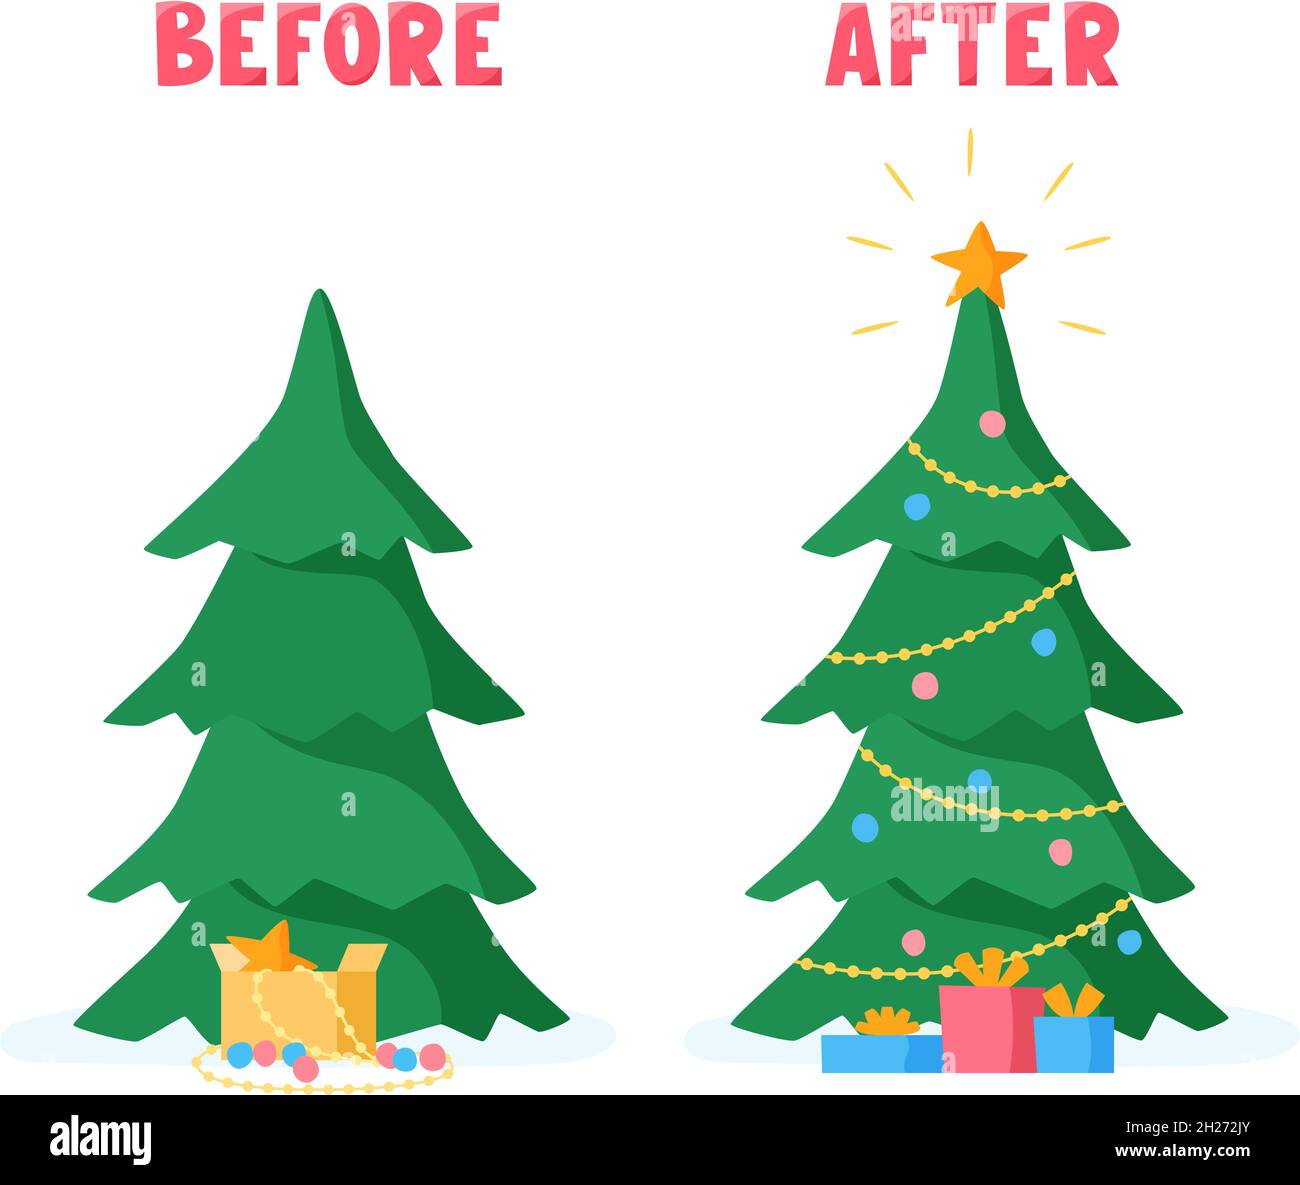 Weihnachtsbaum vor und nach dem Verzieren mit Kugeln, Perlen, Girlanden. Vorbereitung auf die Feiertagsfeier. Vektorgrafik im flachen Stil. Stock Vektor